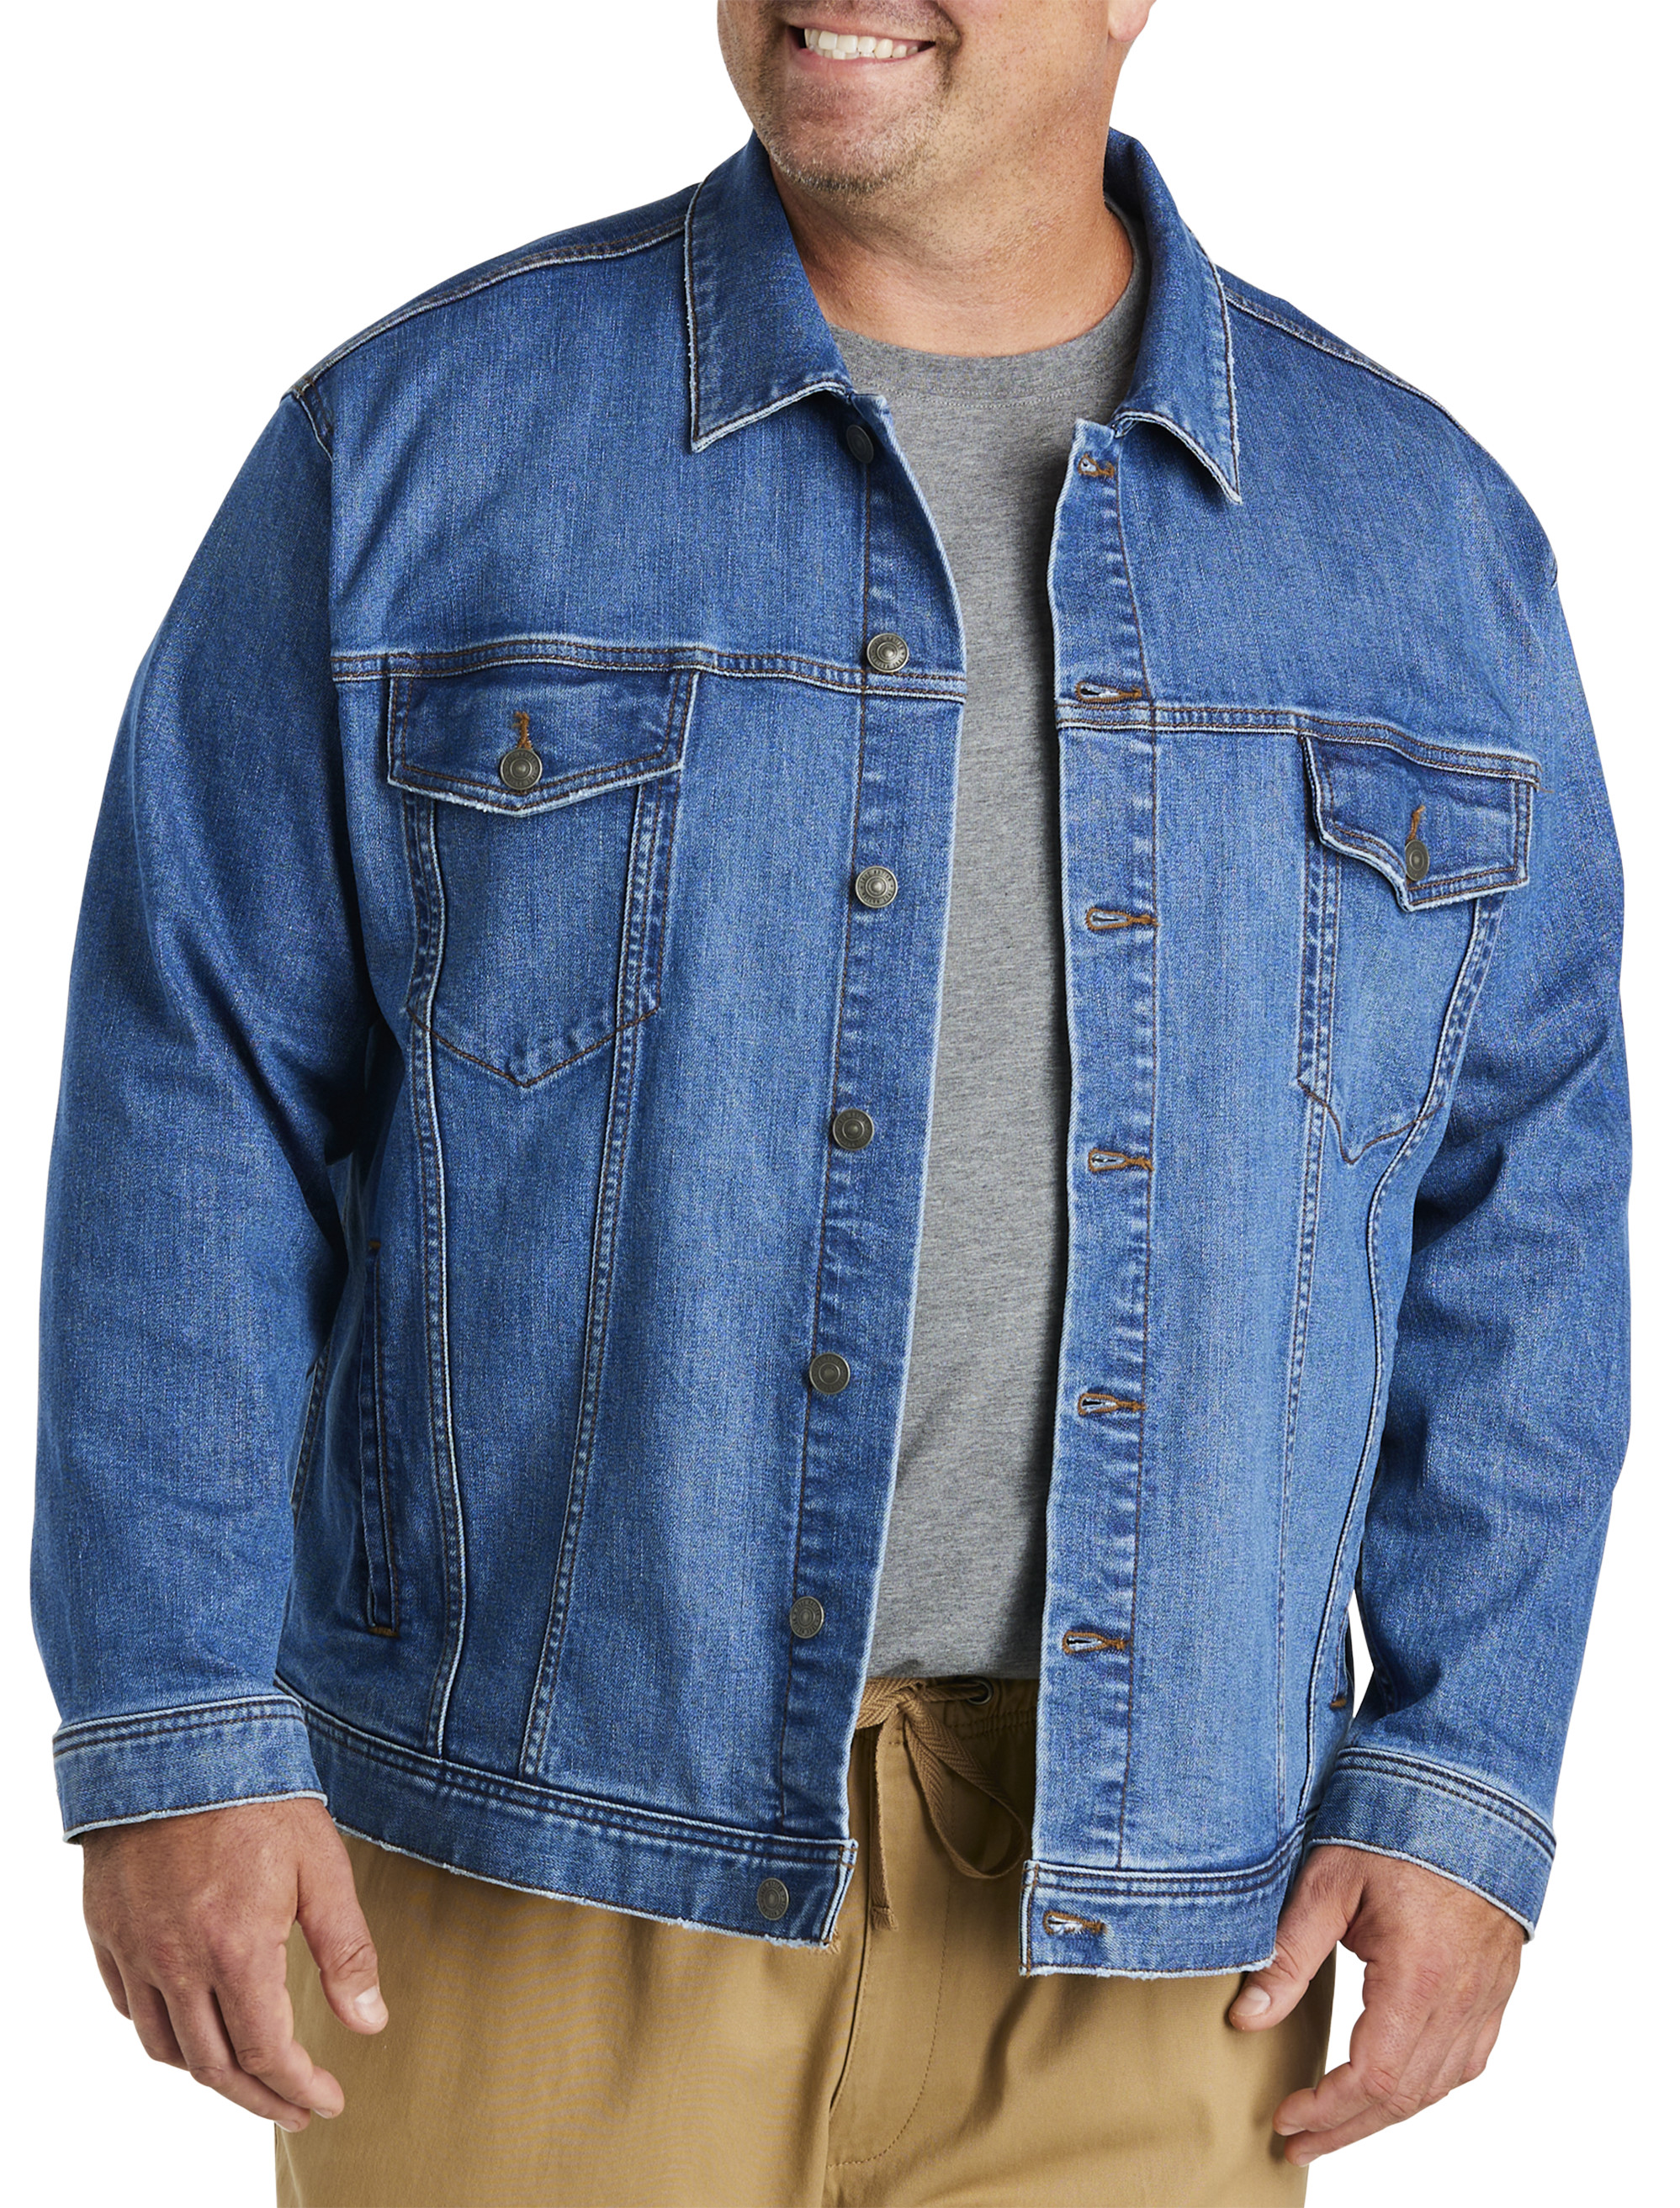 Men's Jean Jacket Hoodie Cotton Denim Long Sleeve Hybrid Hooded Trucker  Jacket, Light Blue, XL